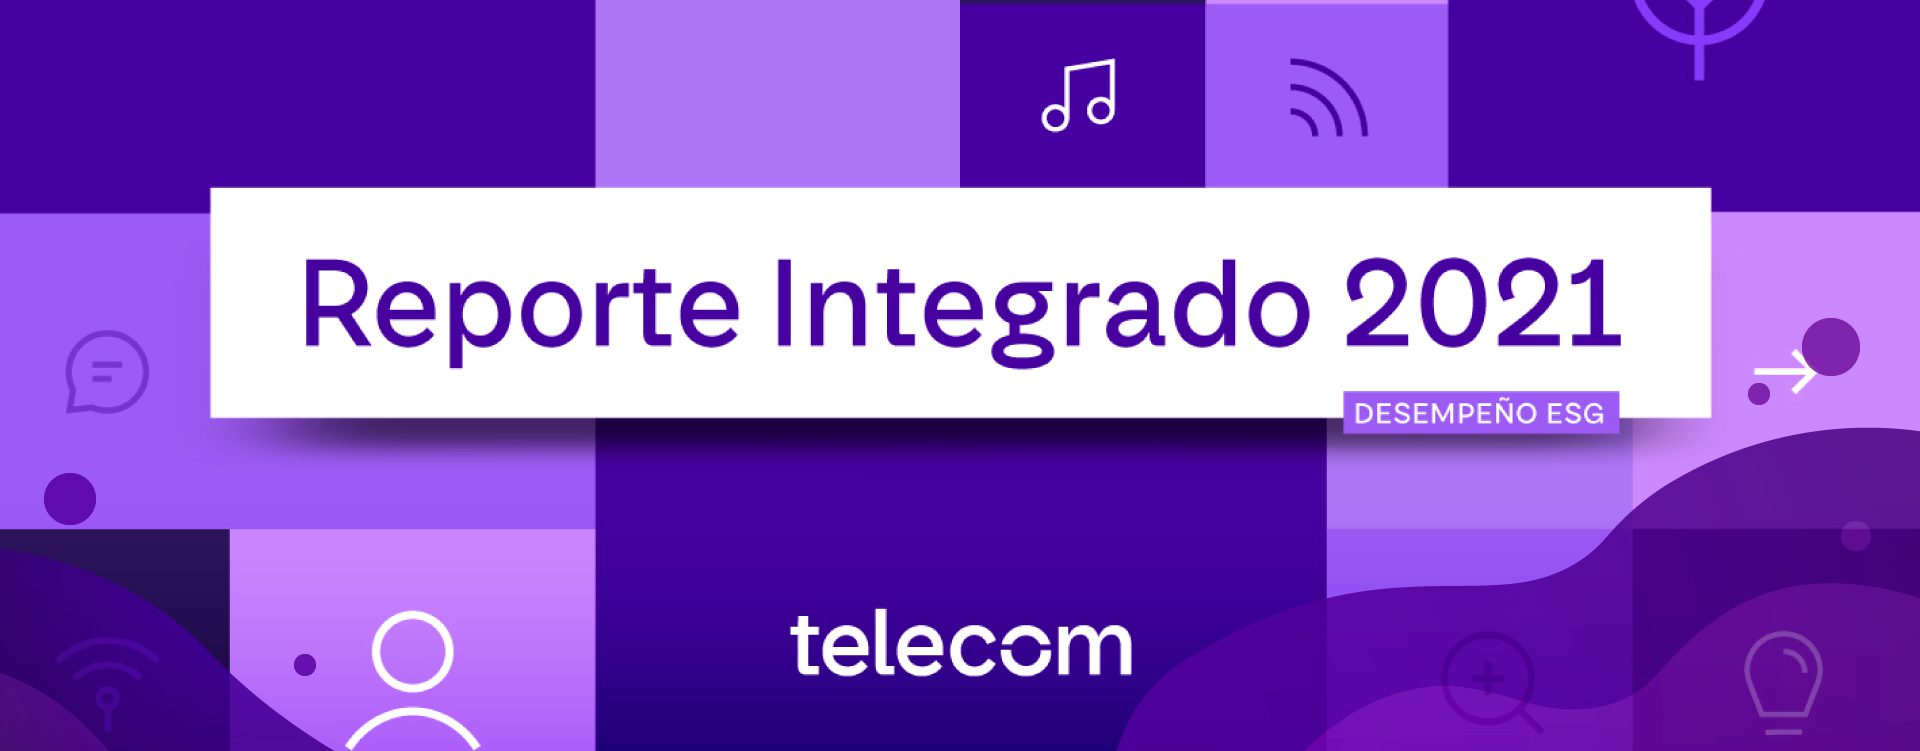 Reporte Integrado Telecom 2021